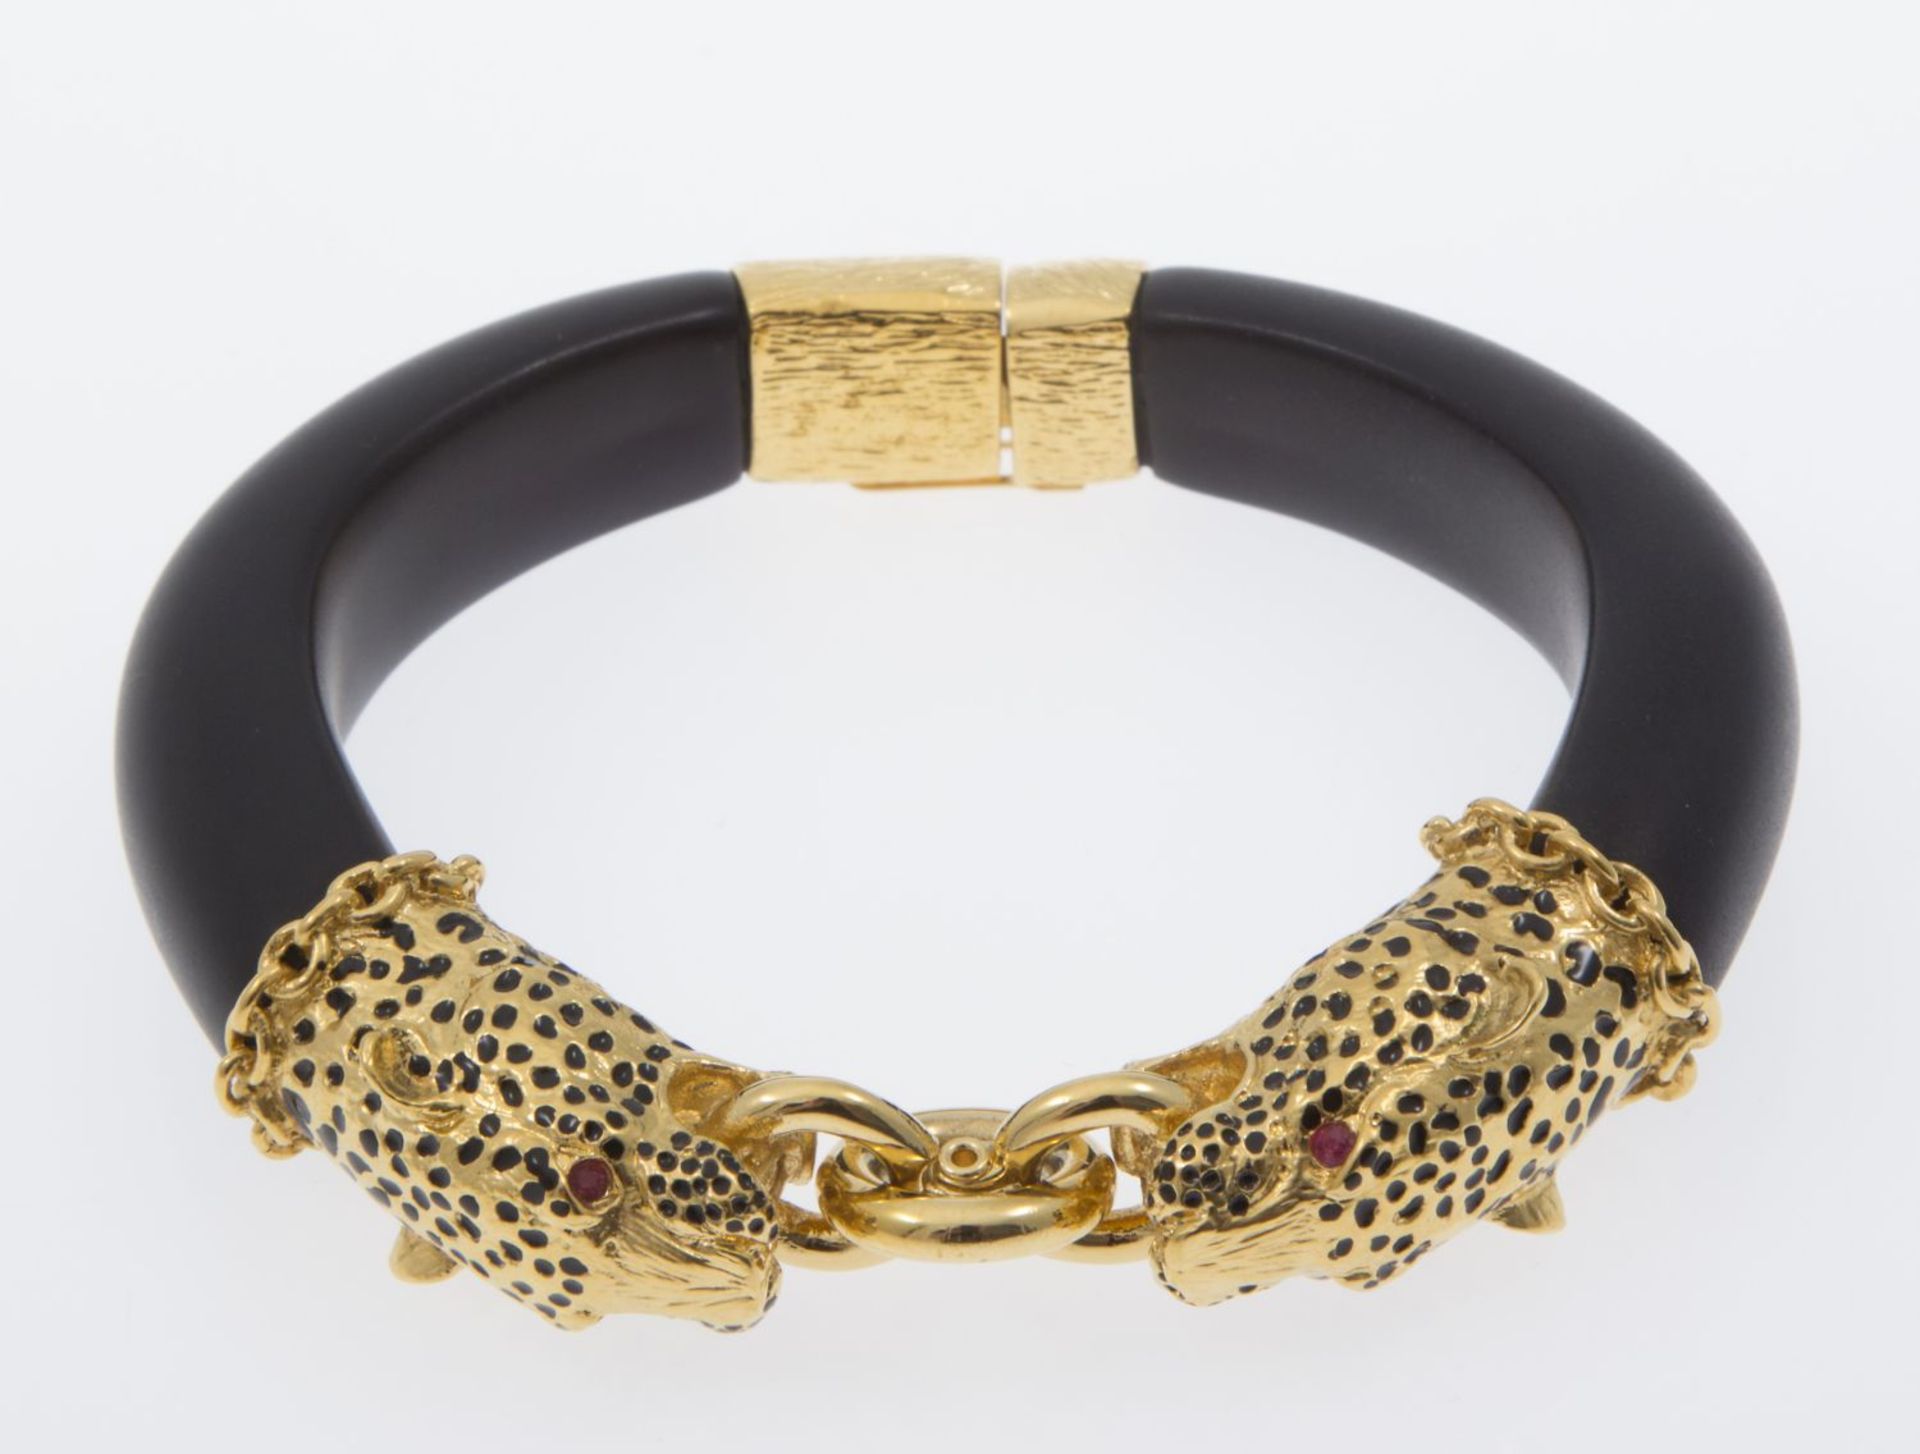 Pantherarmband Metall, vergoldet. Emaildekor. Replik nach dem Armband der Herzogin von Windsor. Fran - Bild 3 aus 3